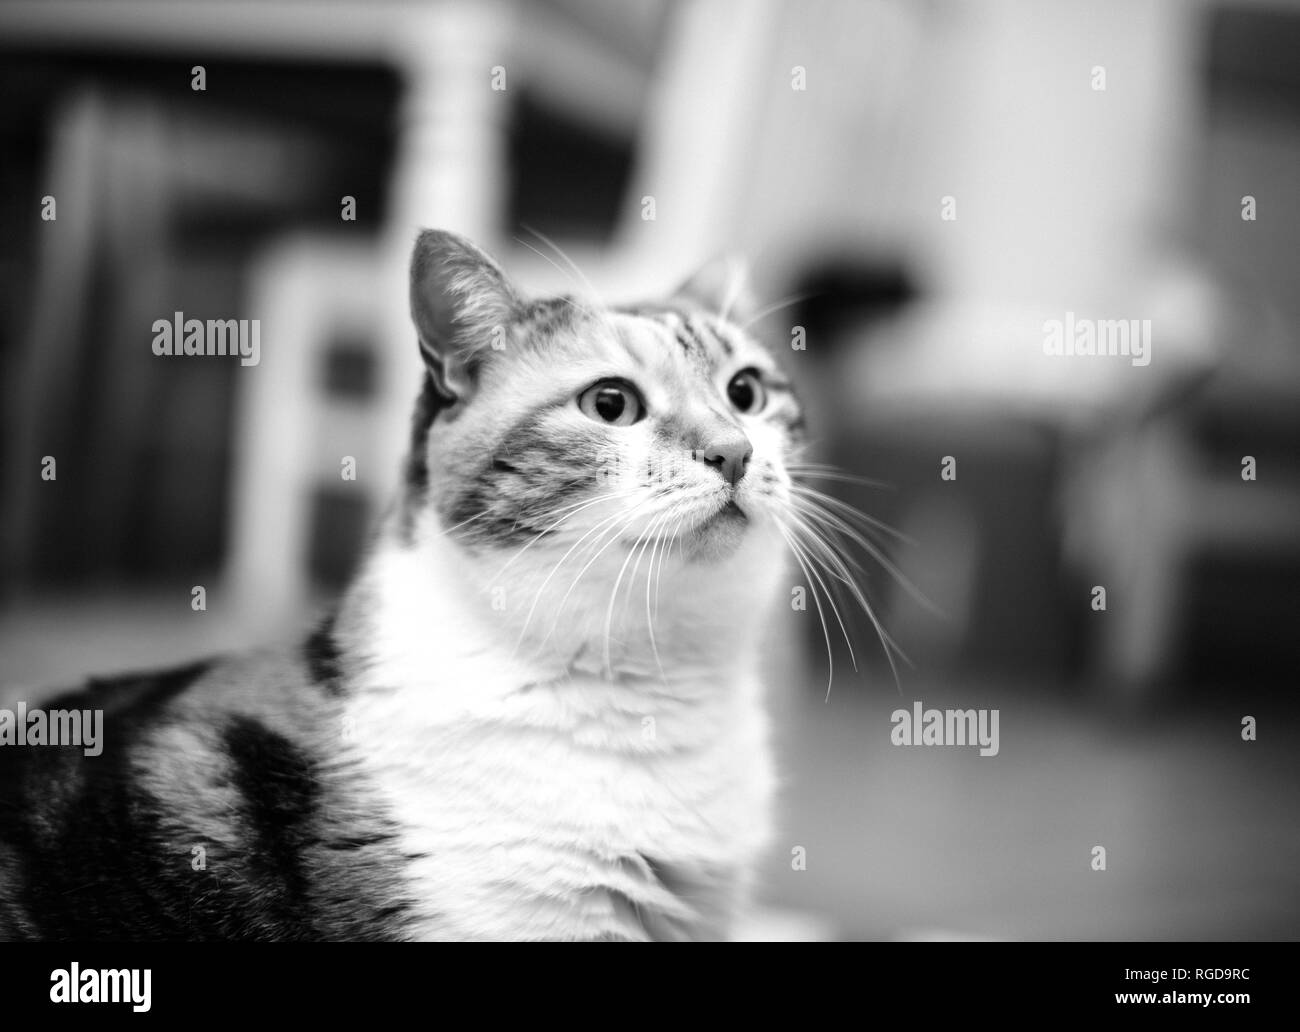 Simpatico ritratto di certi gravi cat - immagine in bianco e nero Foto Stock